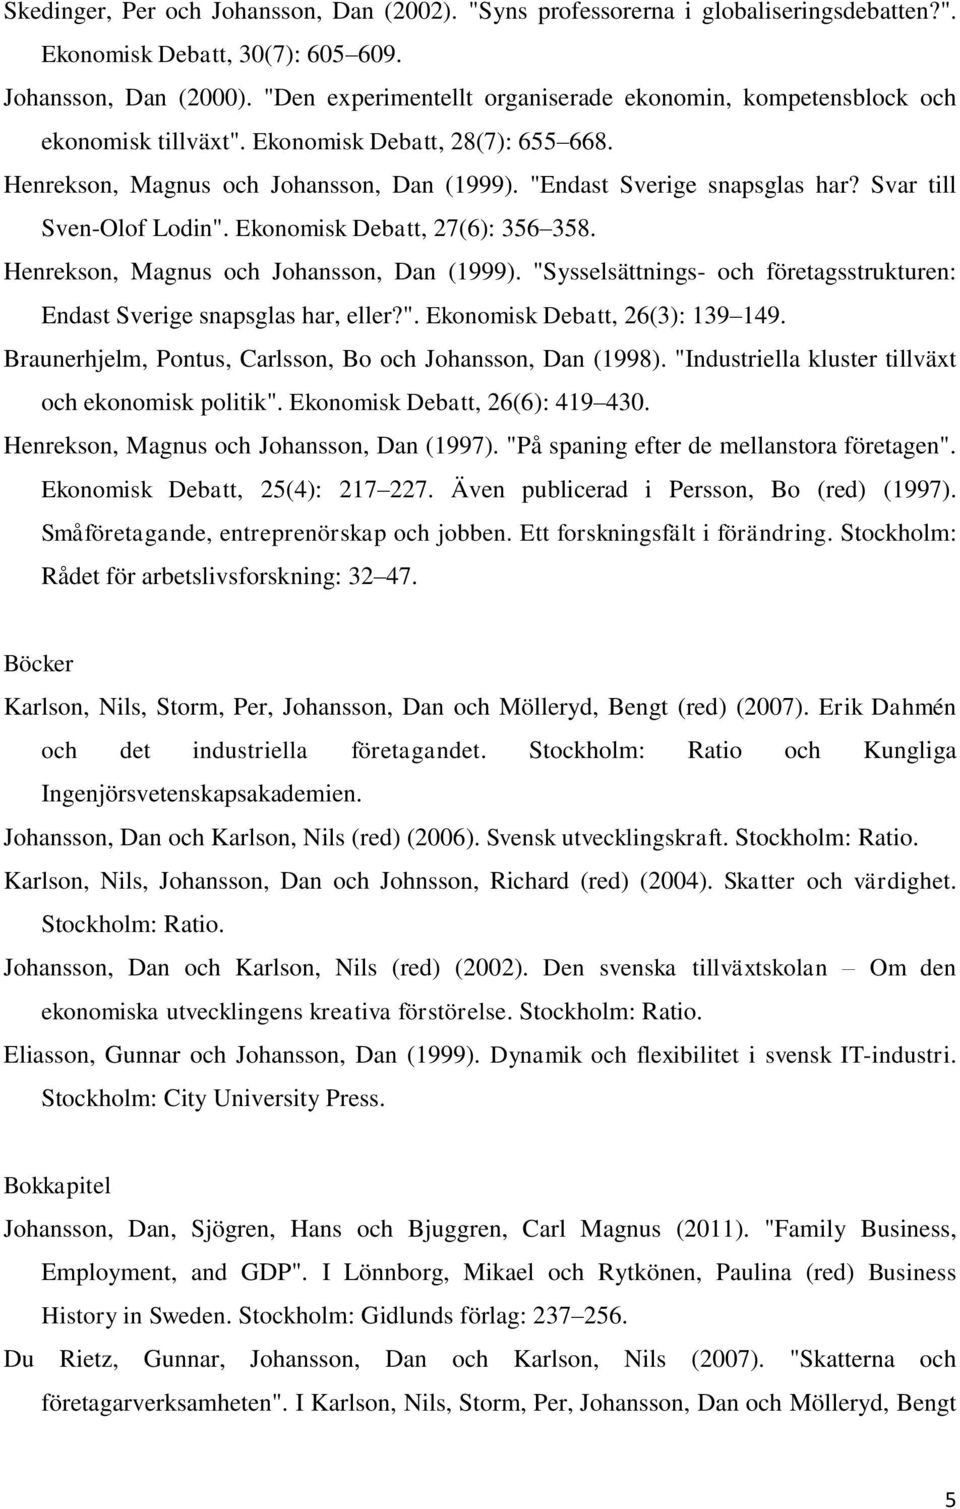 Svar till Sven-Olof Lodin". Ekonomisk Debatt, 27(6): 356 358. Henrekson, Magnus och Johansson, Dan (1999). "Sysselsättnings- och företagsstrukturen: Endast Sverige snapsglas har, eller?". Ekonomisk Debatt, 26(3): 139 149.